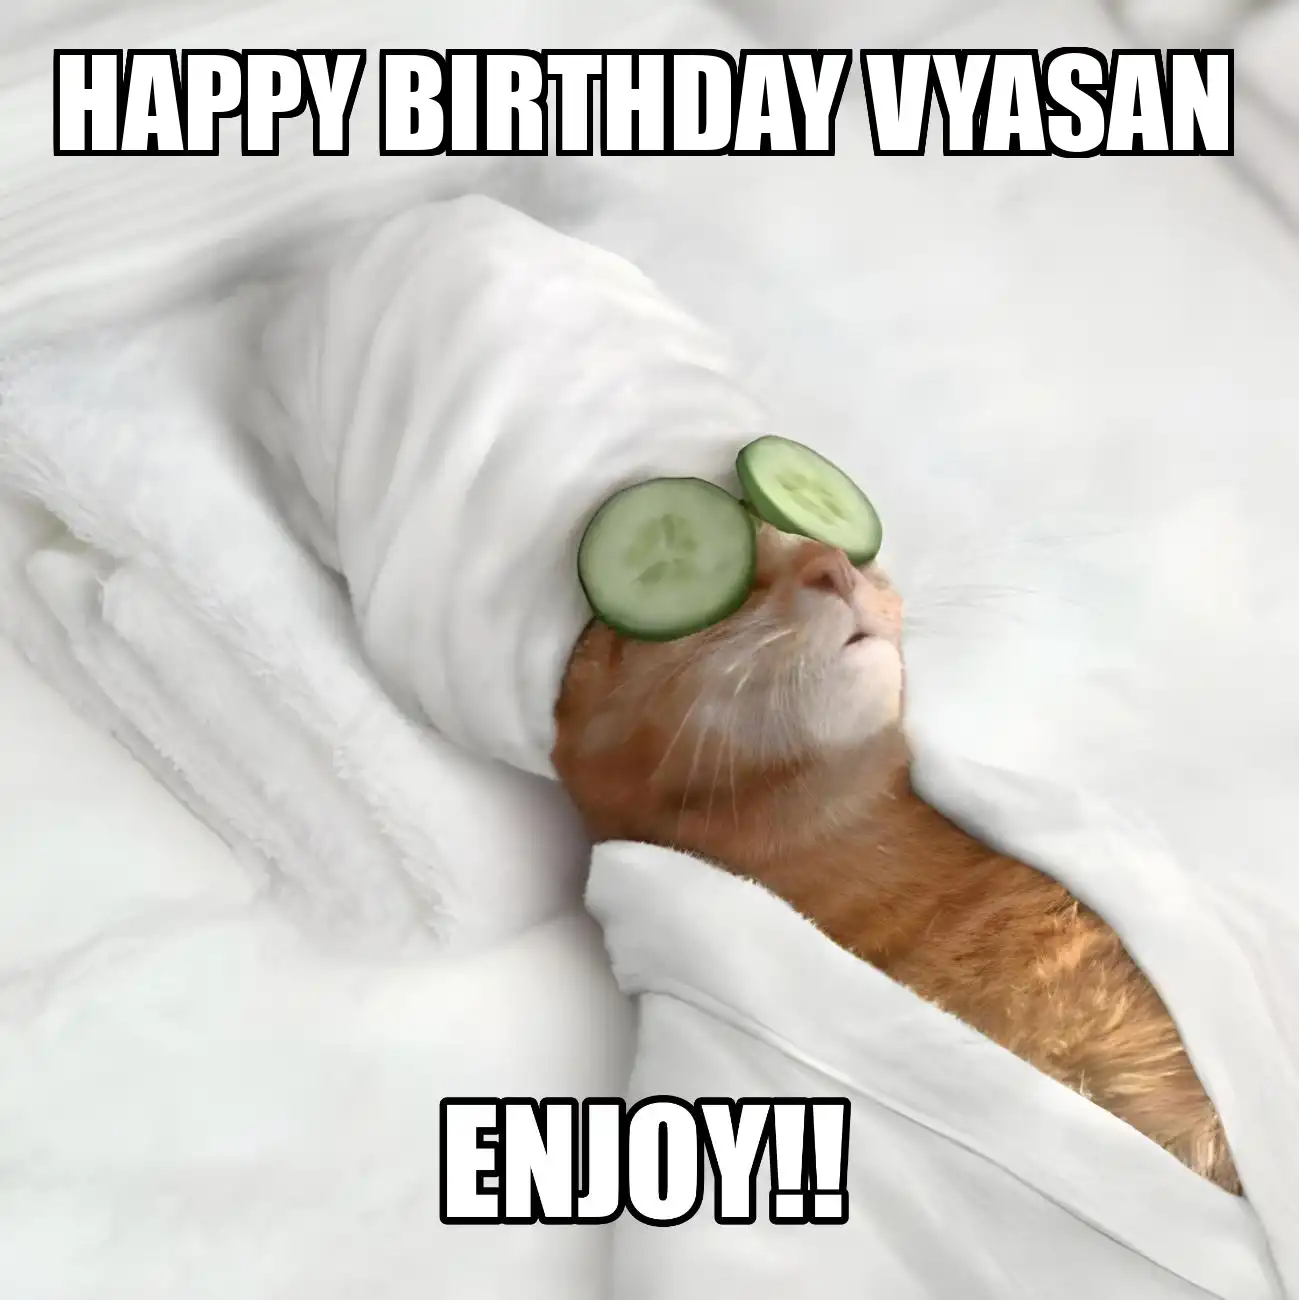 Happy Birthday Vyasan Enjoy Cat Meme